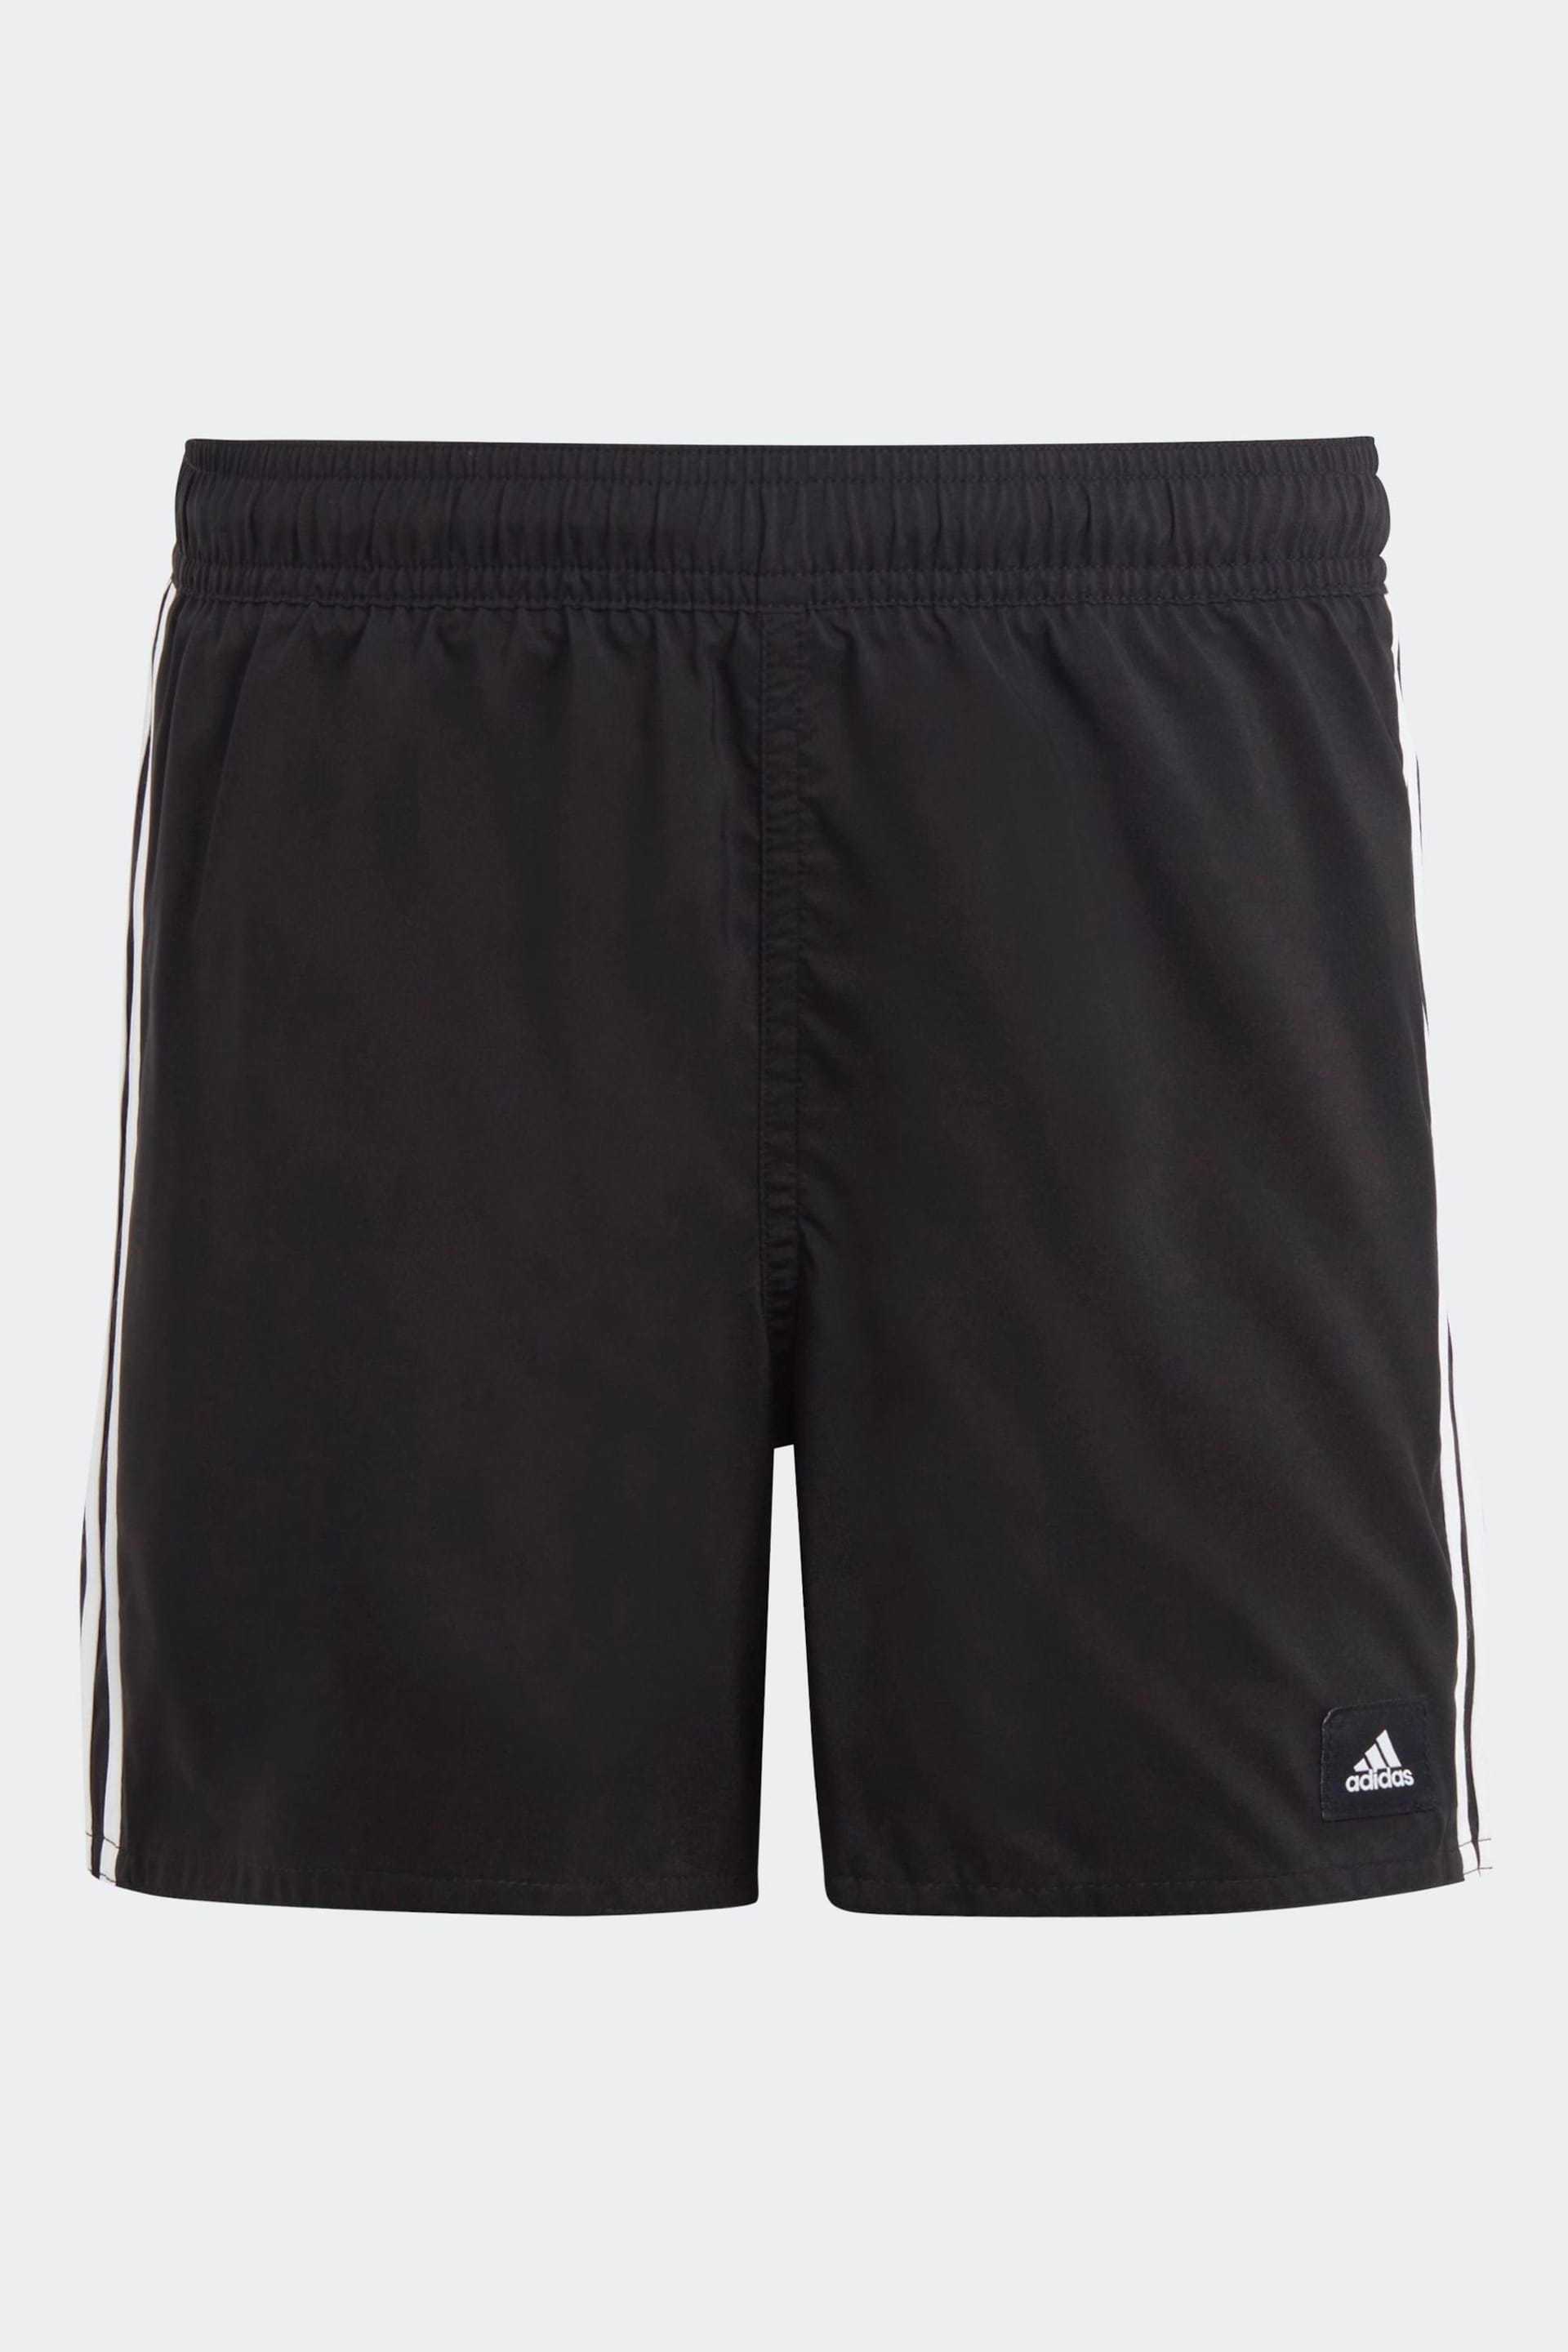 adidas Black 3 Stripes Swim Shorts - Image 1 of 3